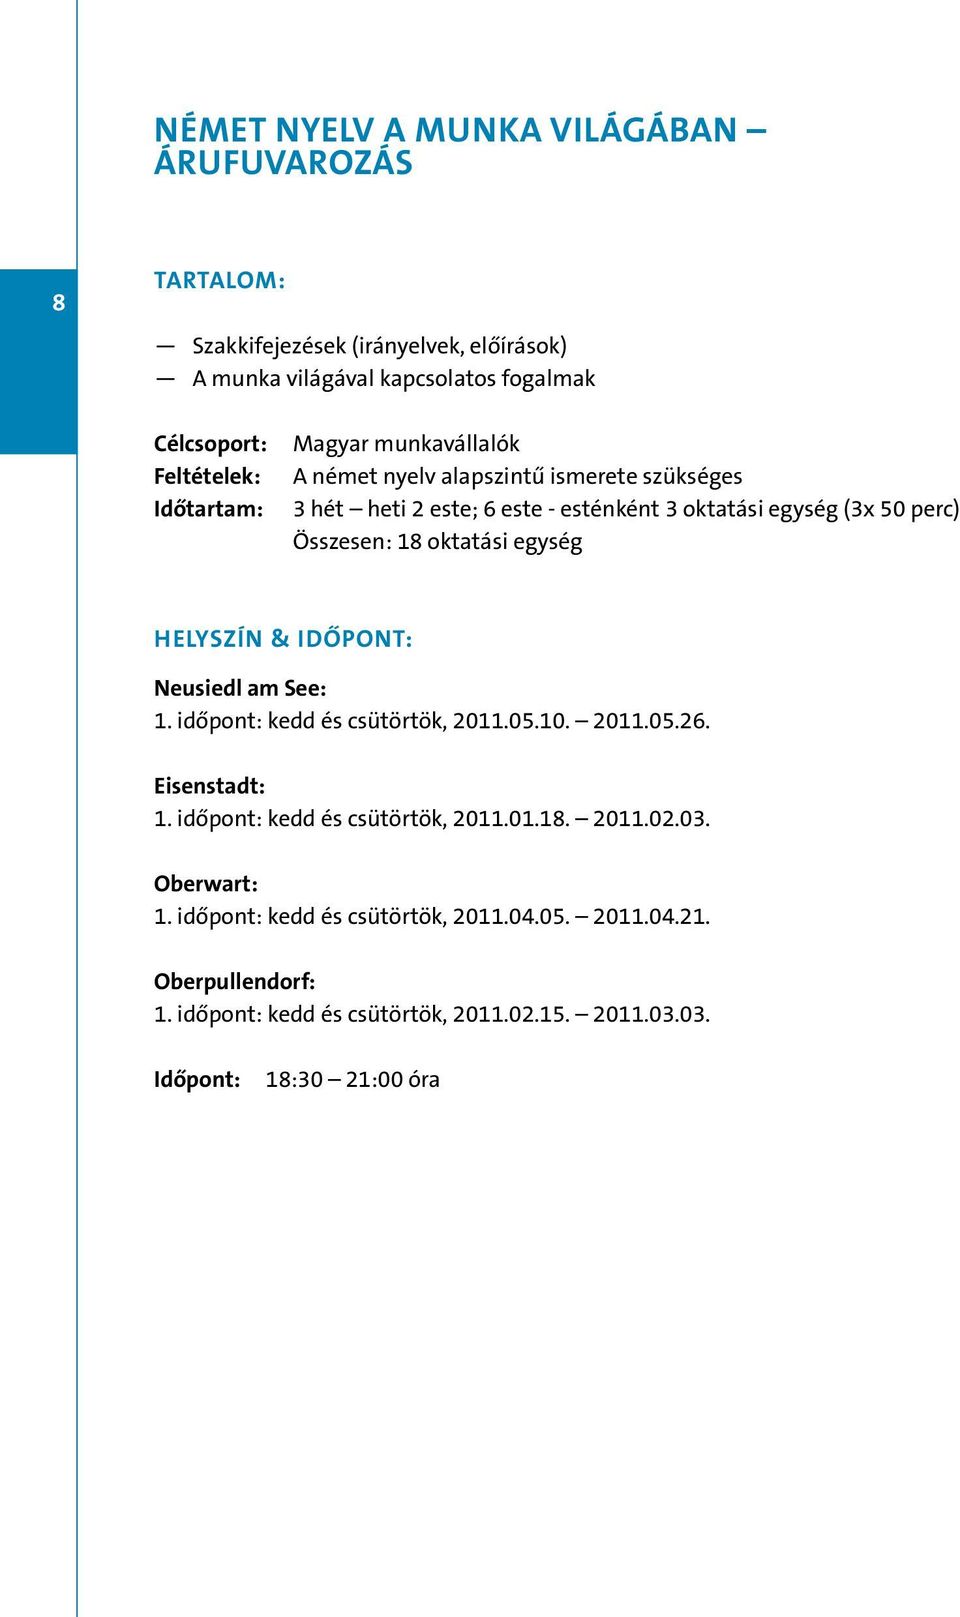 18 oktatási egység Neusiedl am See: 1. időpont: kedd és csütörtök, 2011.05.10. 2011.05.26. 1. időpont: kedd és csütörtök, 2011.01.18. 2011.02.